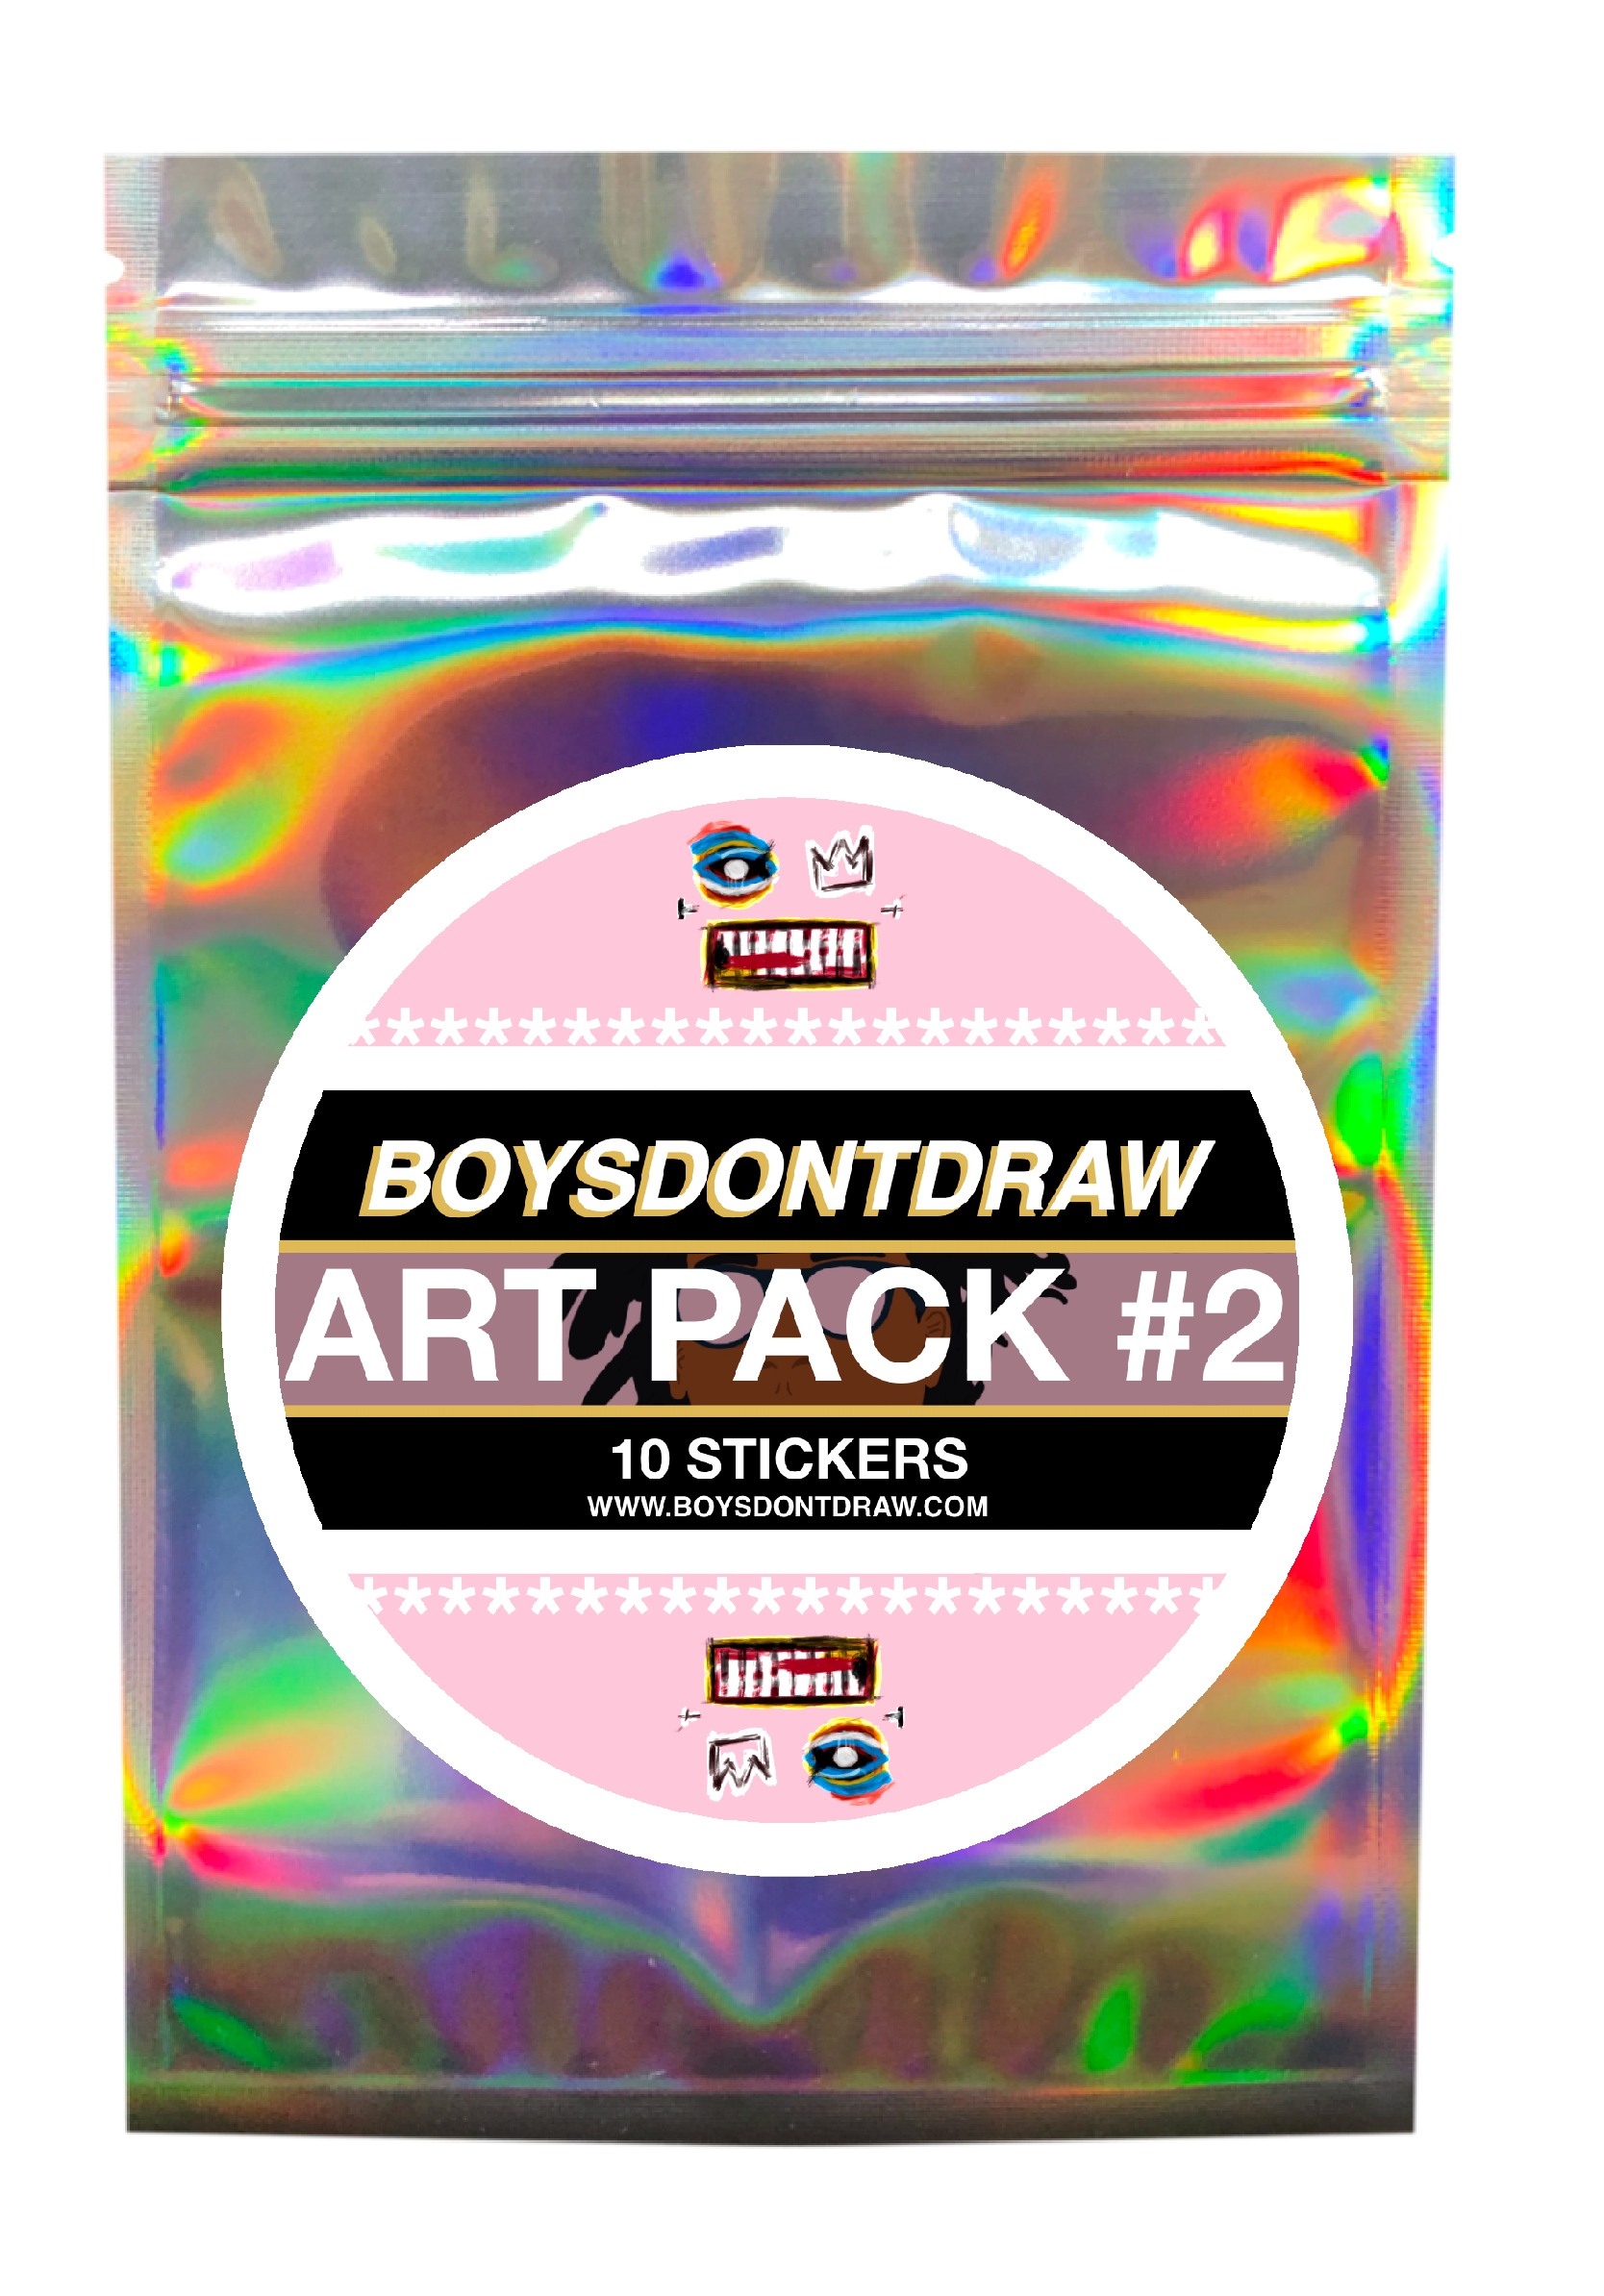 ART PACK #2 - Sticker Package - BOYSDONTDRAW